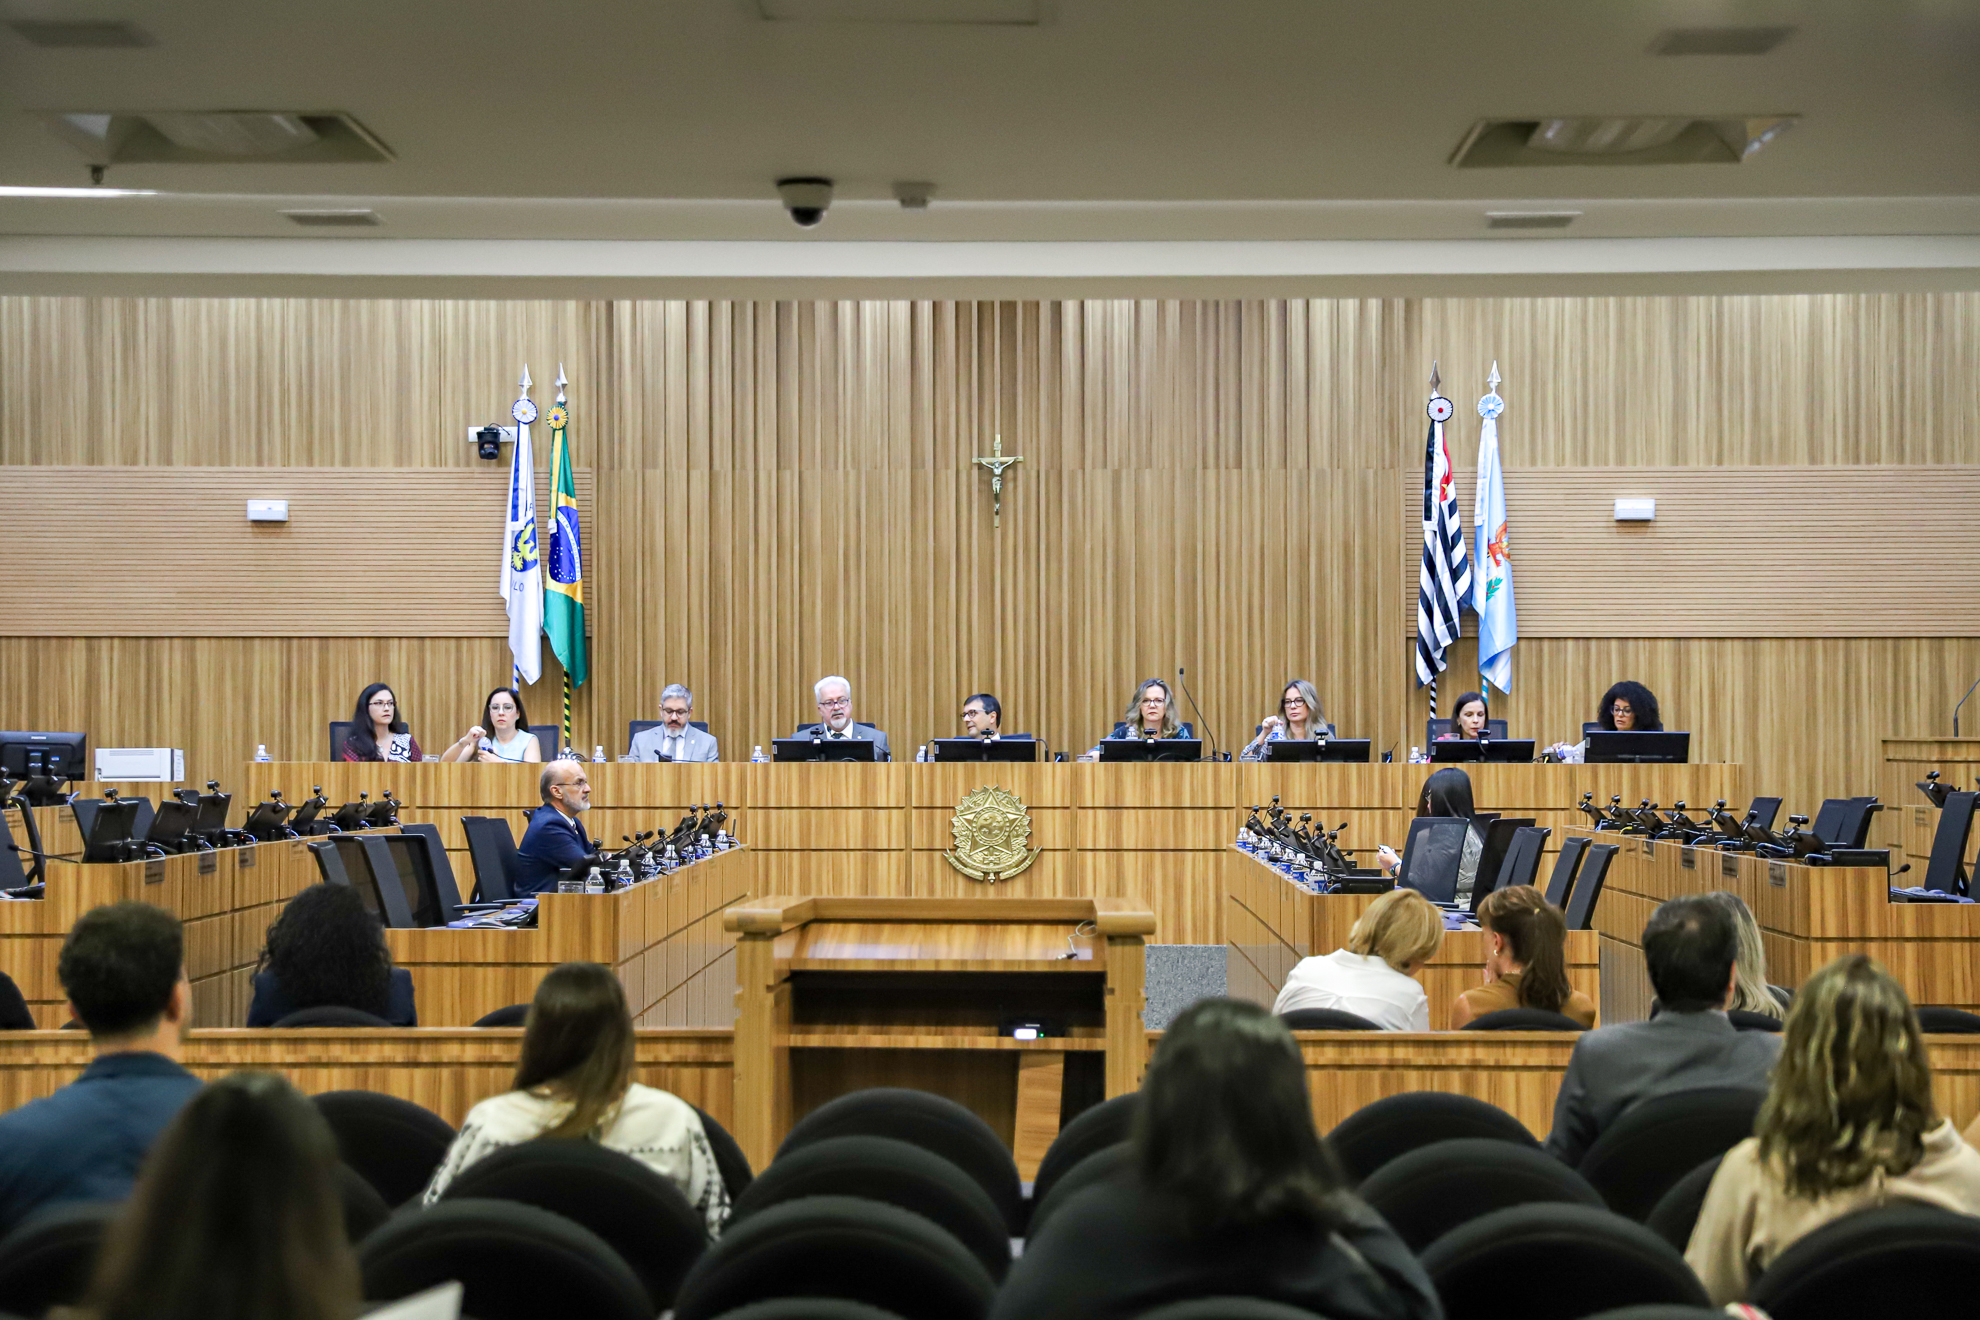 Foto da mesa alta, no Plenário. Nove pessoas, sendo seis mulheres sentados à mesa alta, sendo observados pelo público.